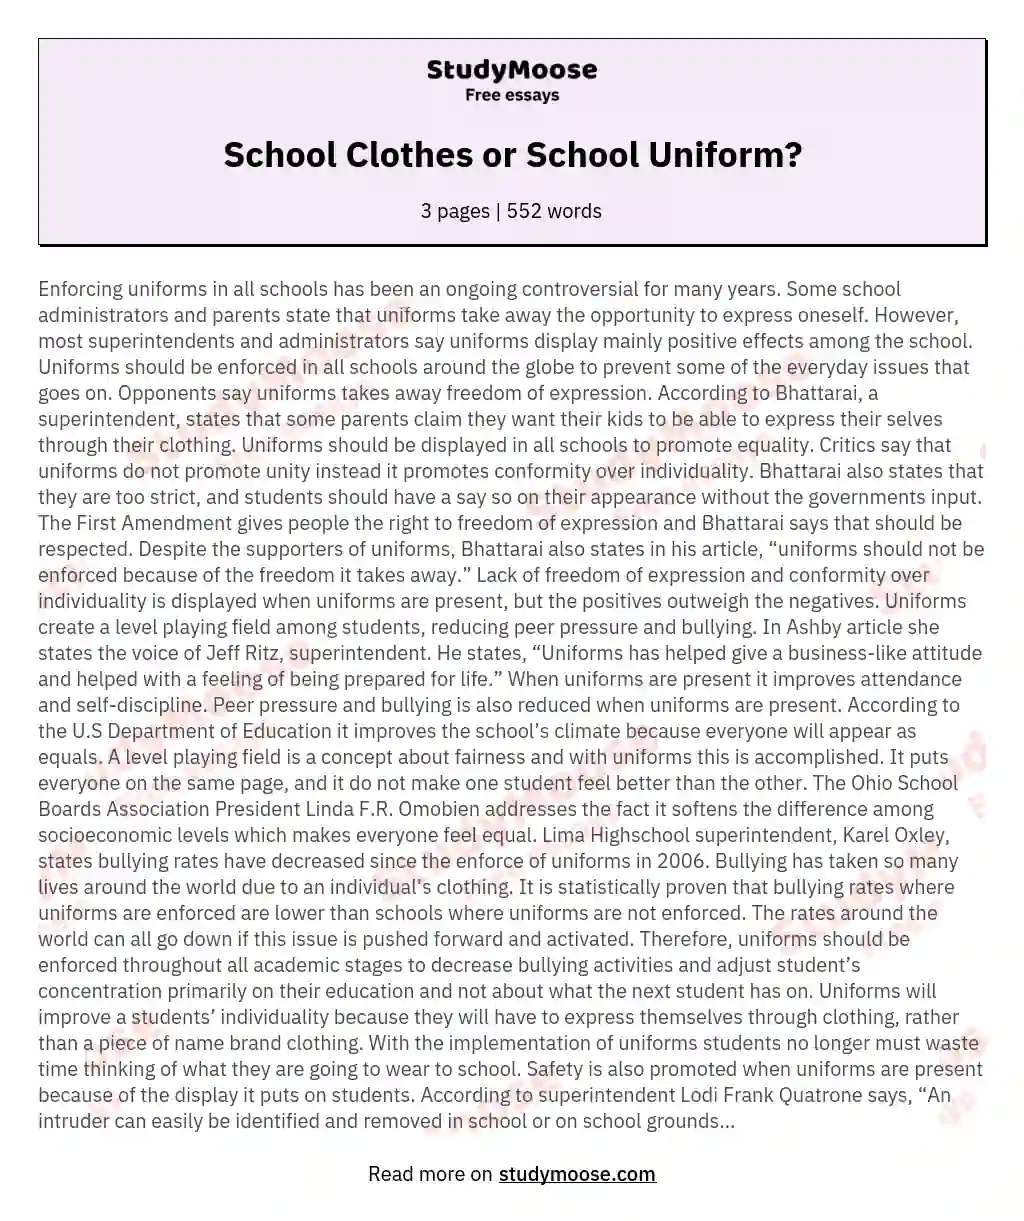 School Clothes or School Uniform?